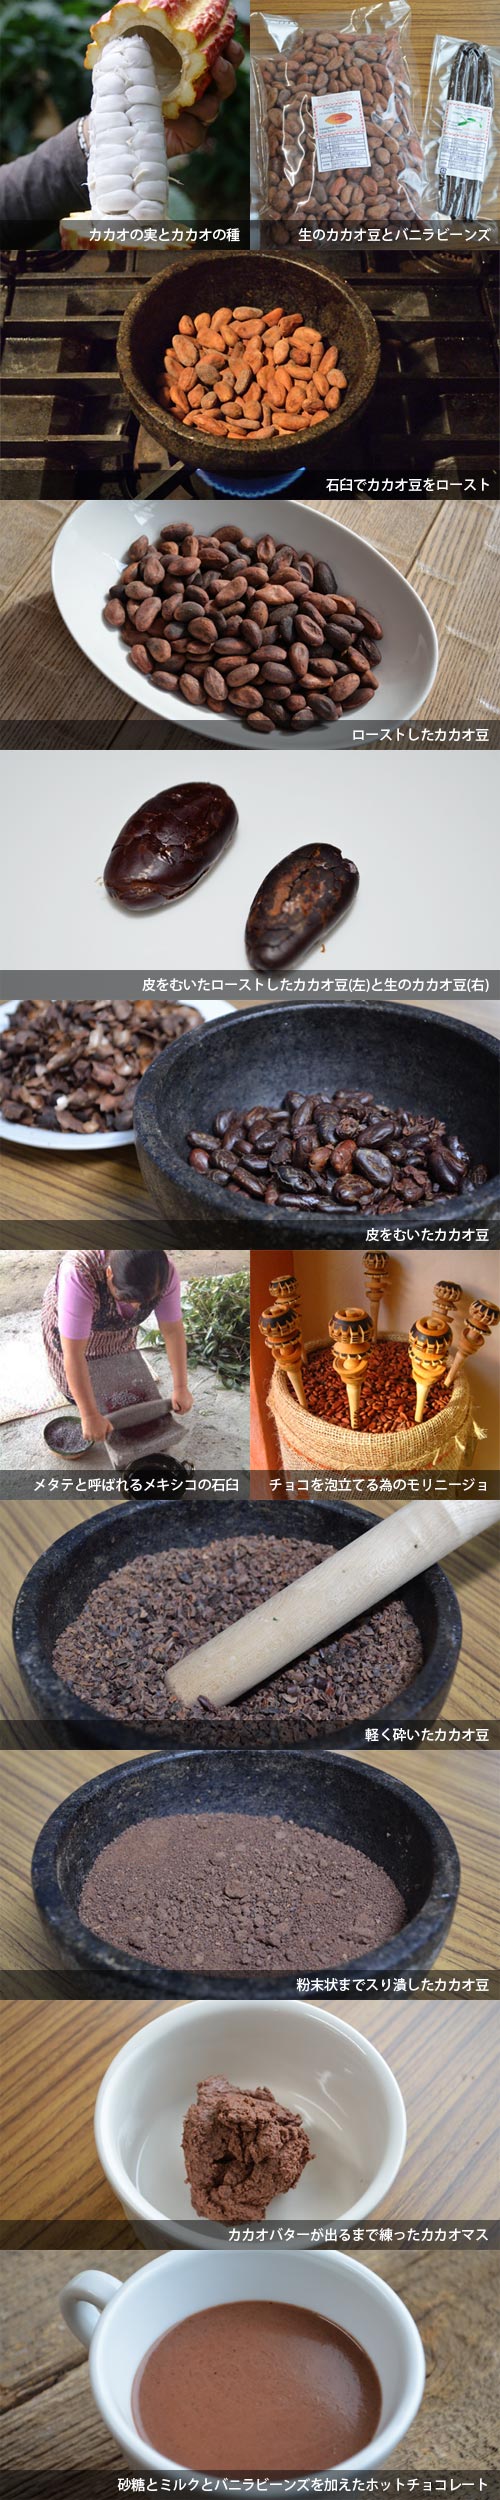 映画ショコラのようなマヤ文明のレシピでカカオ豆から作るホットチョコレートの作り方